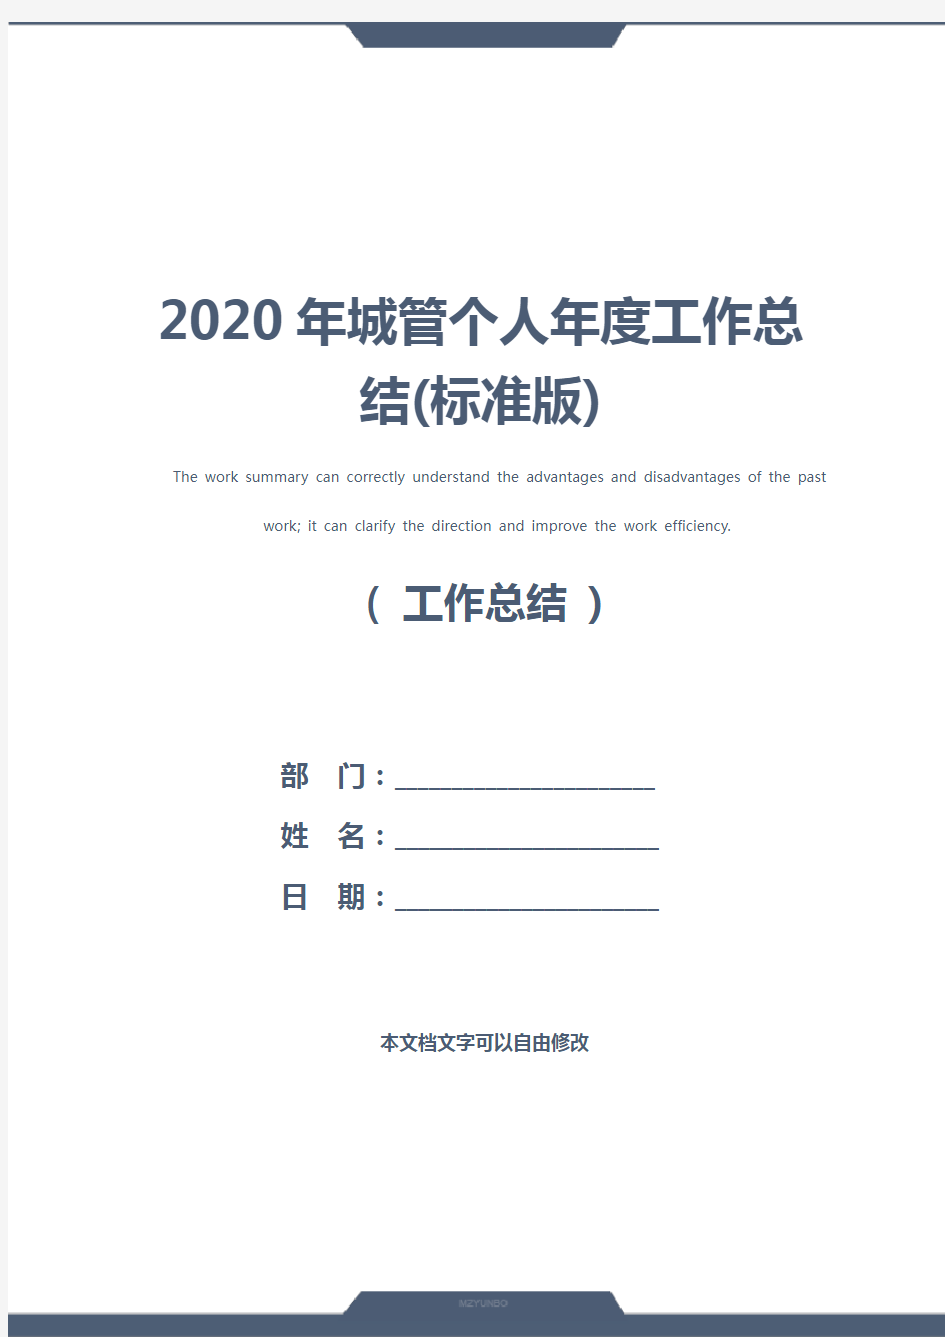 2020年城管个人年度工作总结(标准版)